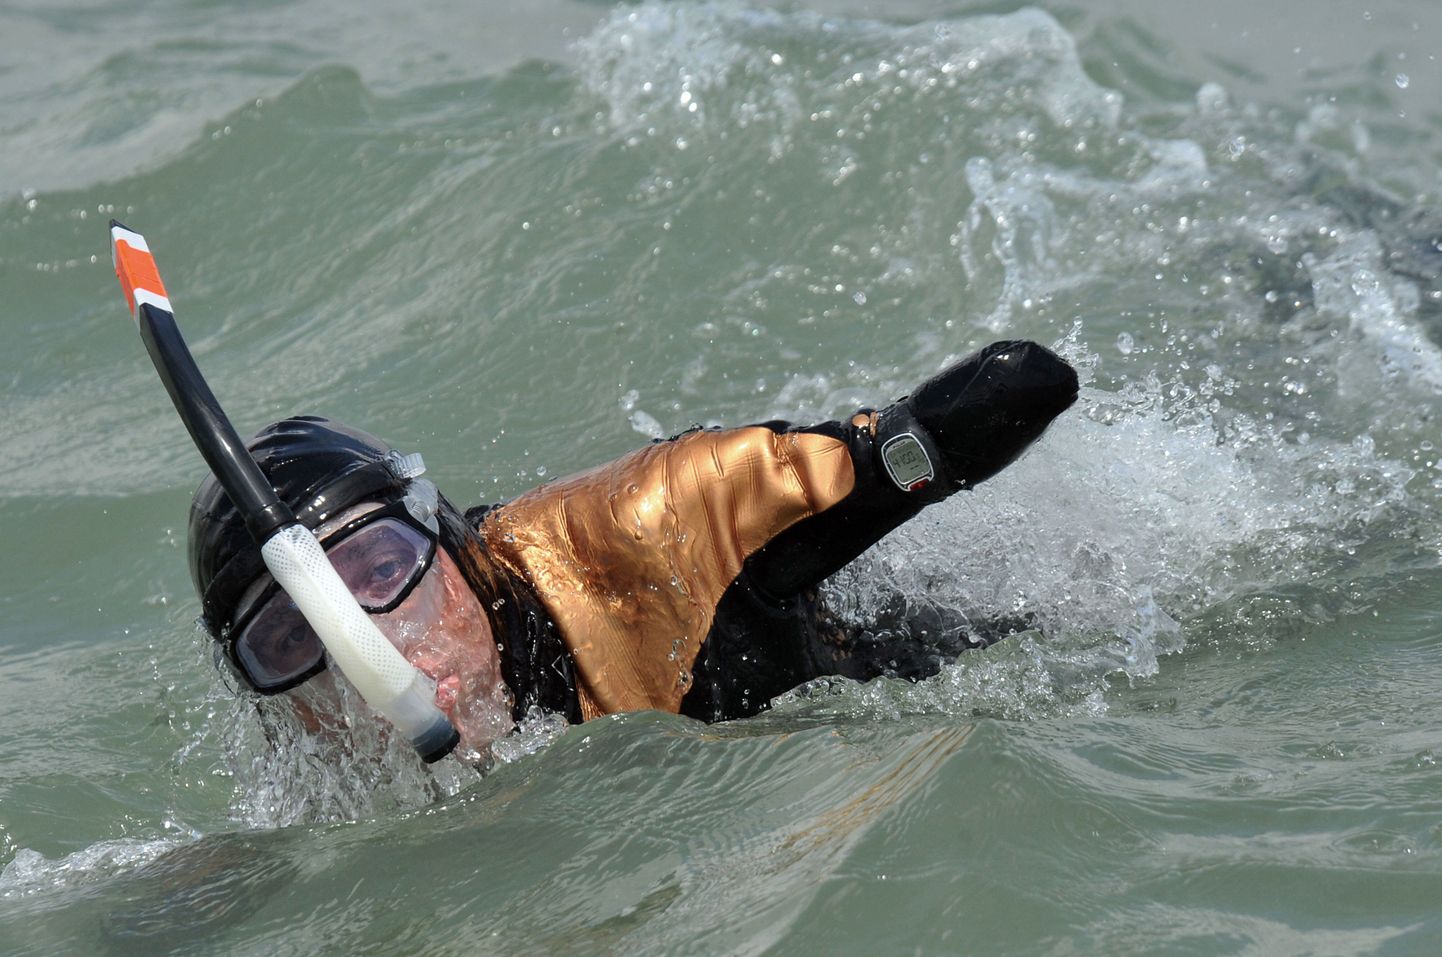 Француз, которому 16 лет назад ампутировали руки и ноги, переплыл пролив Ла-Манш 18 сентября 2010.